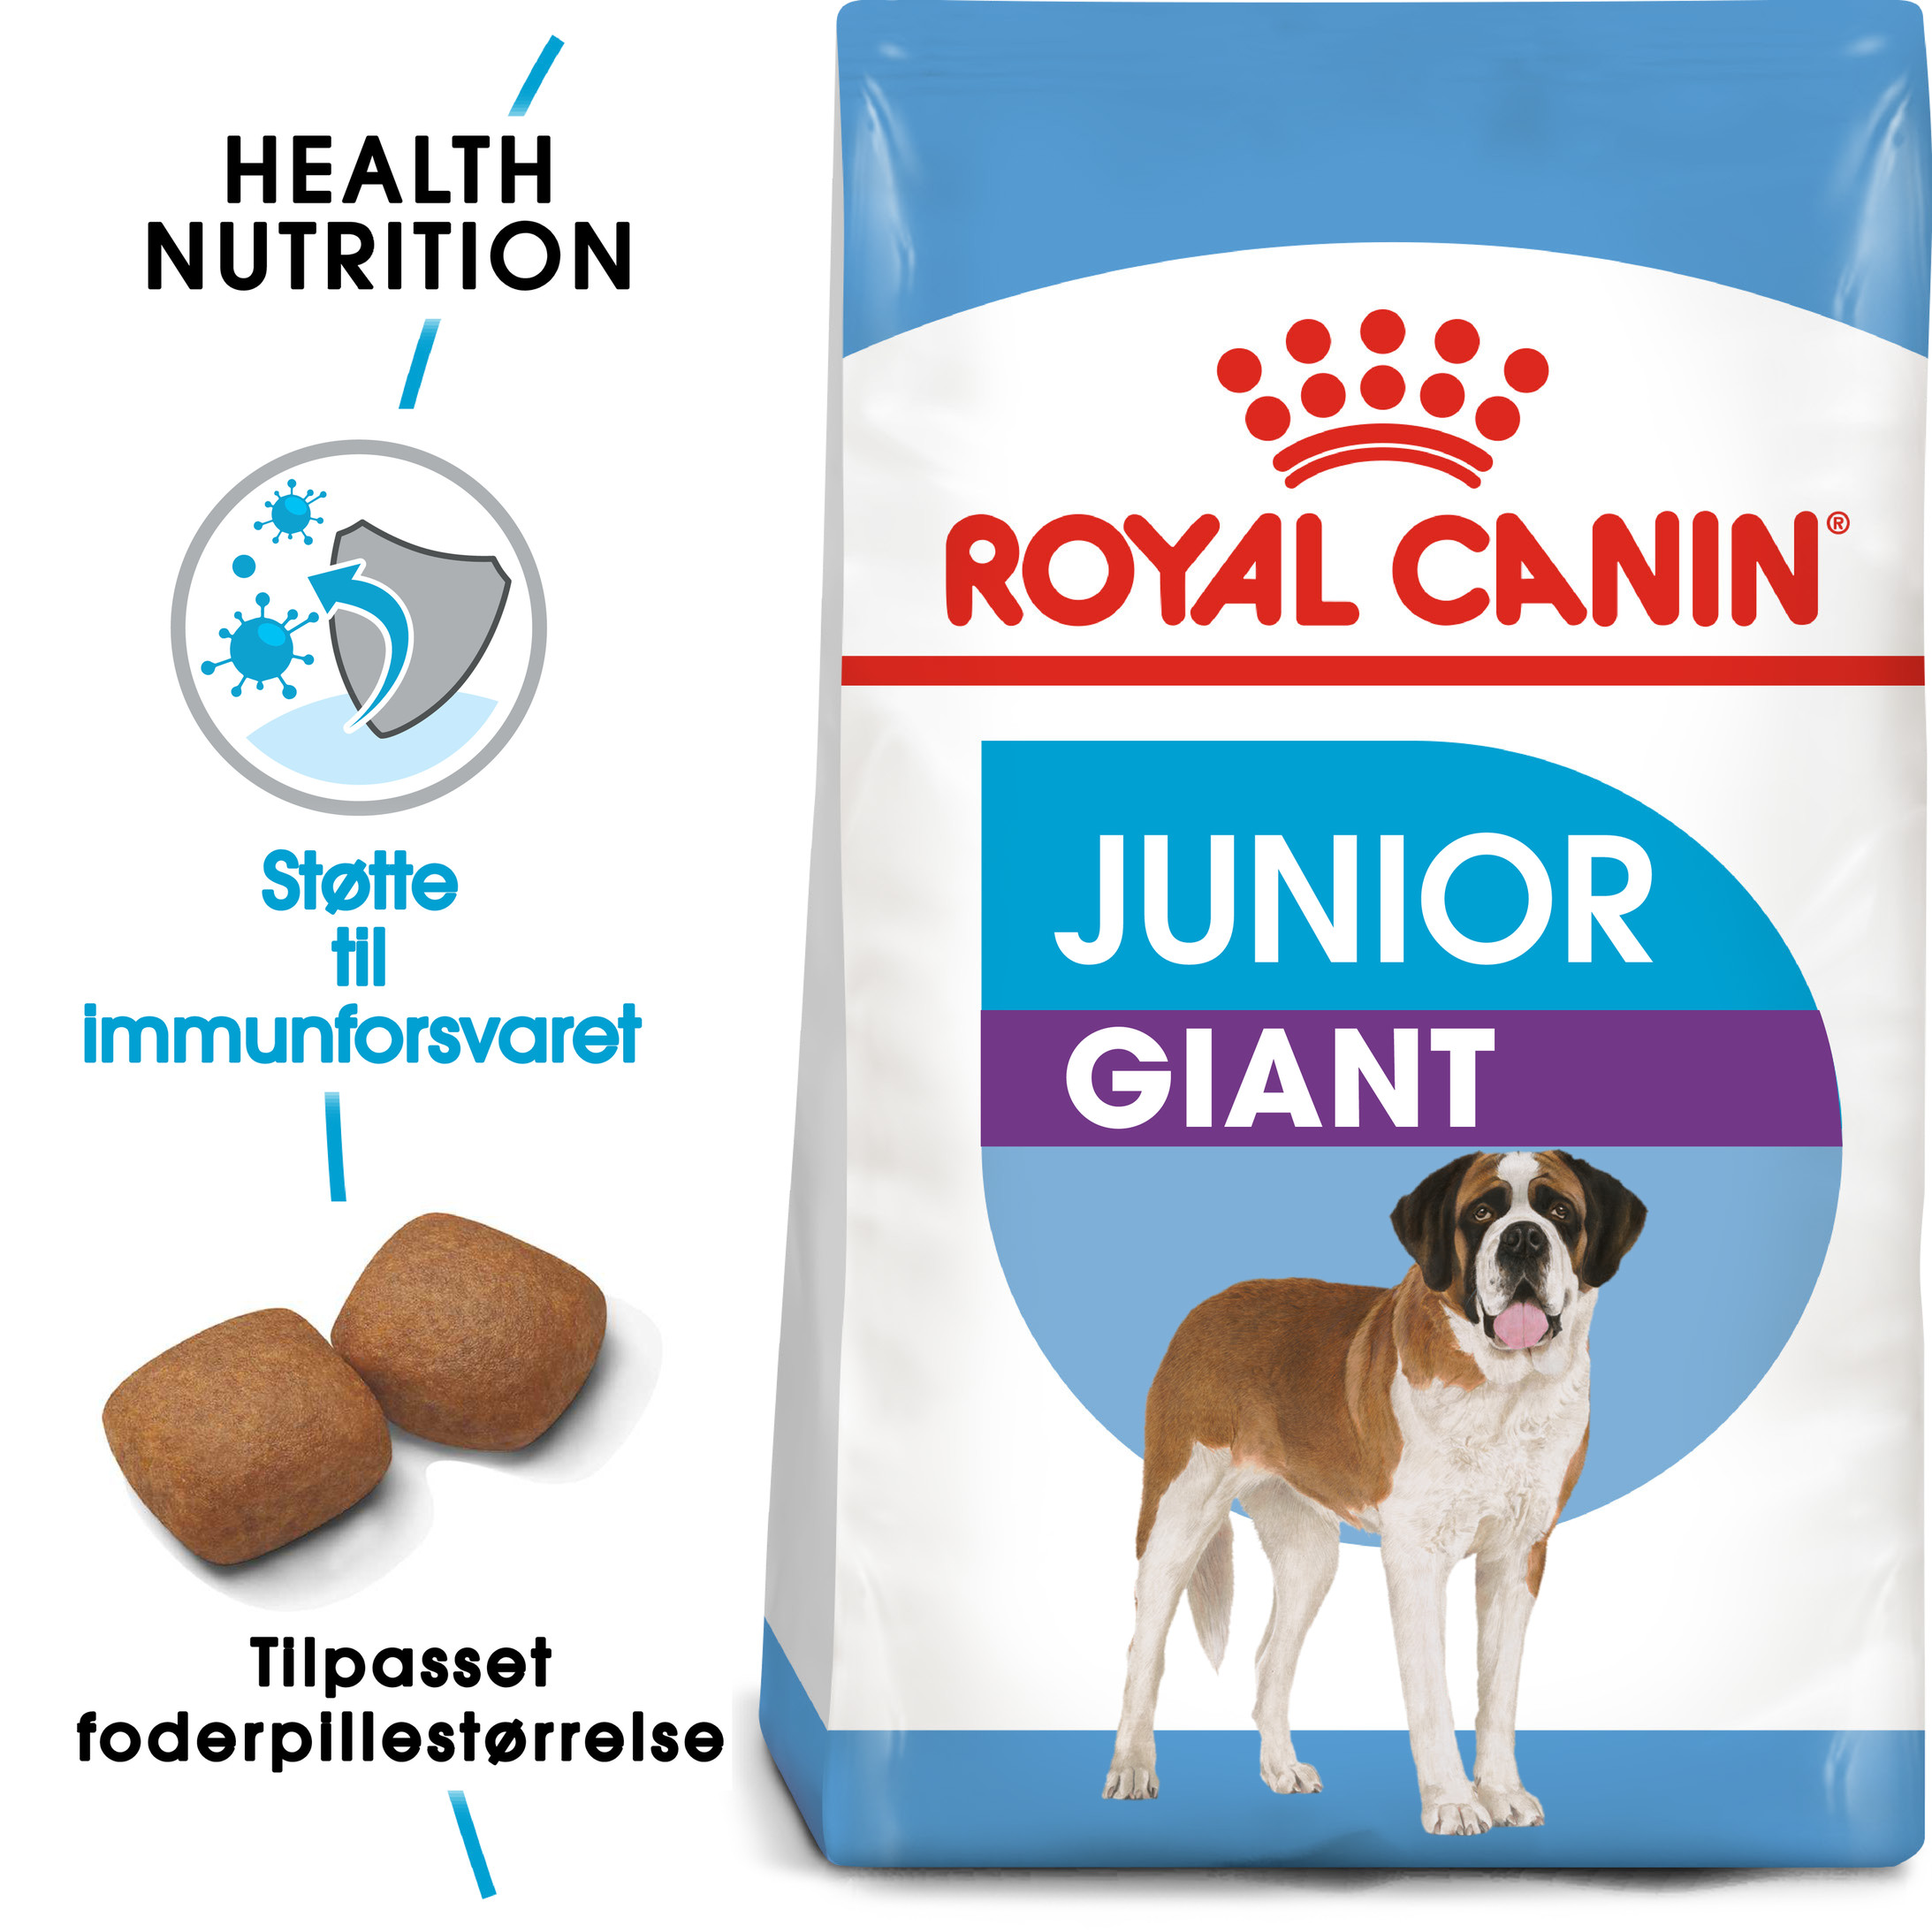 Royal Canin Giant Junior hundefoder